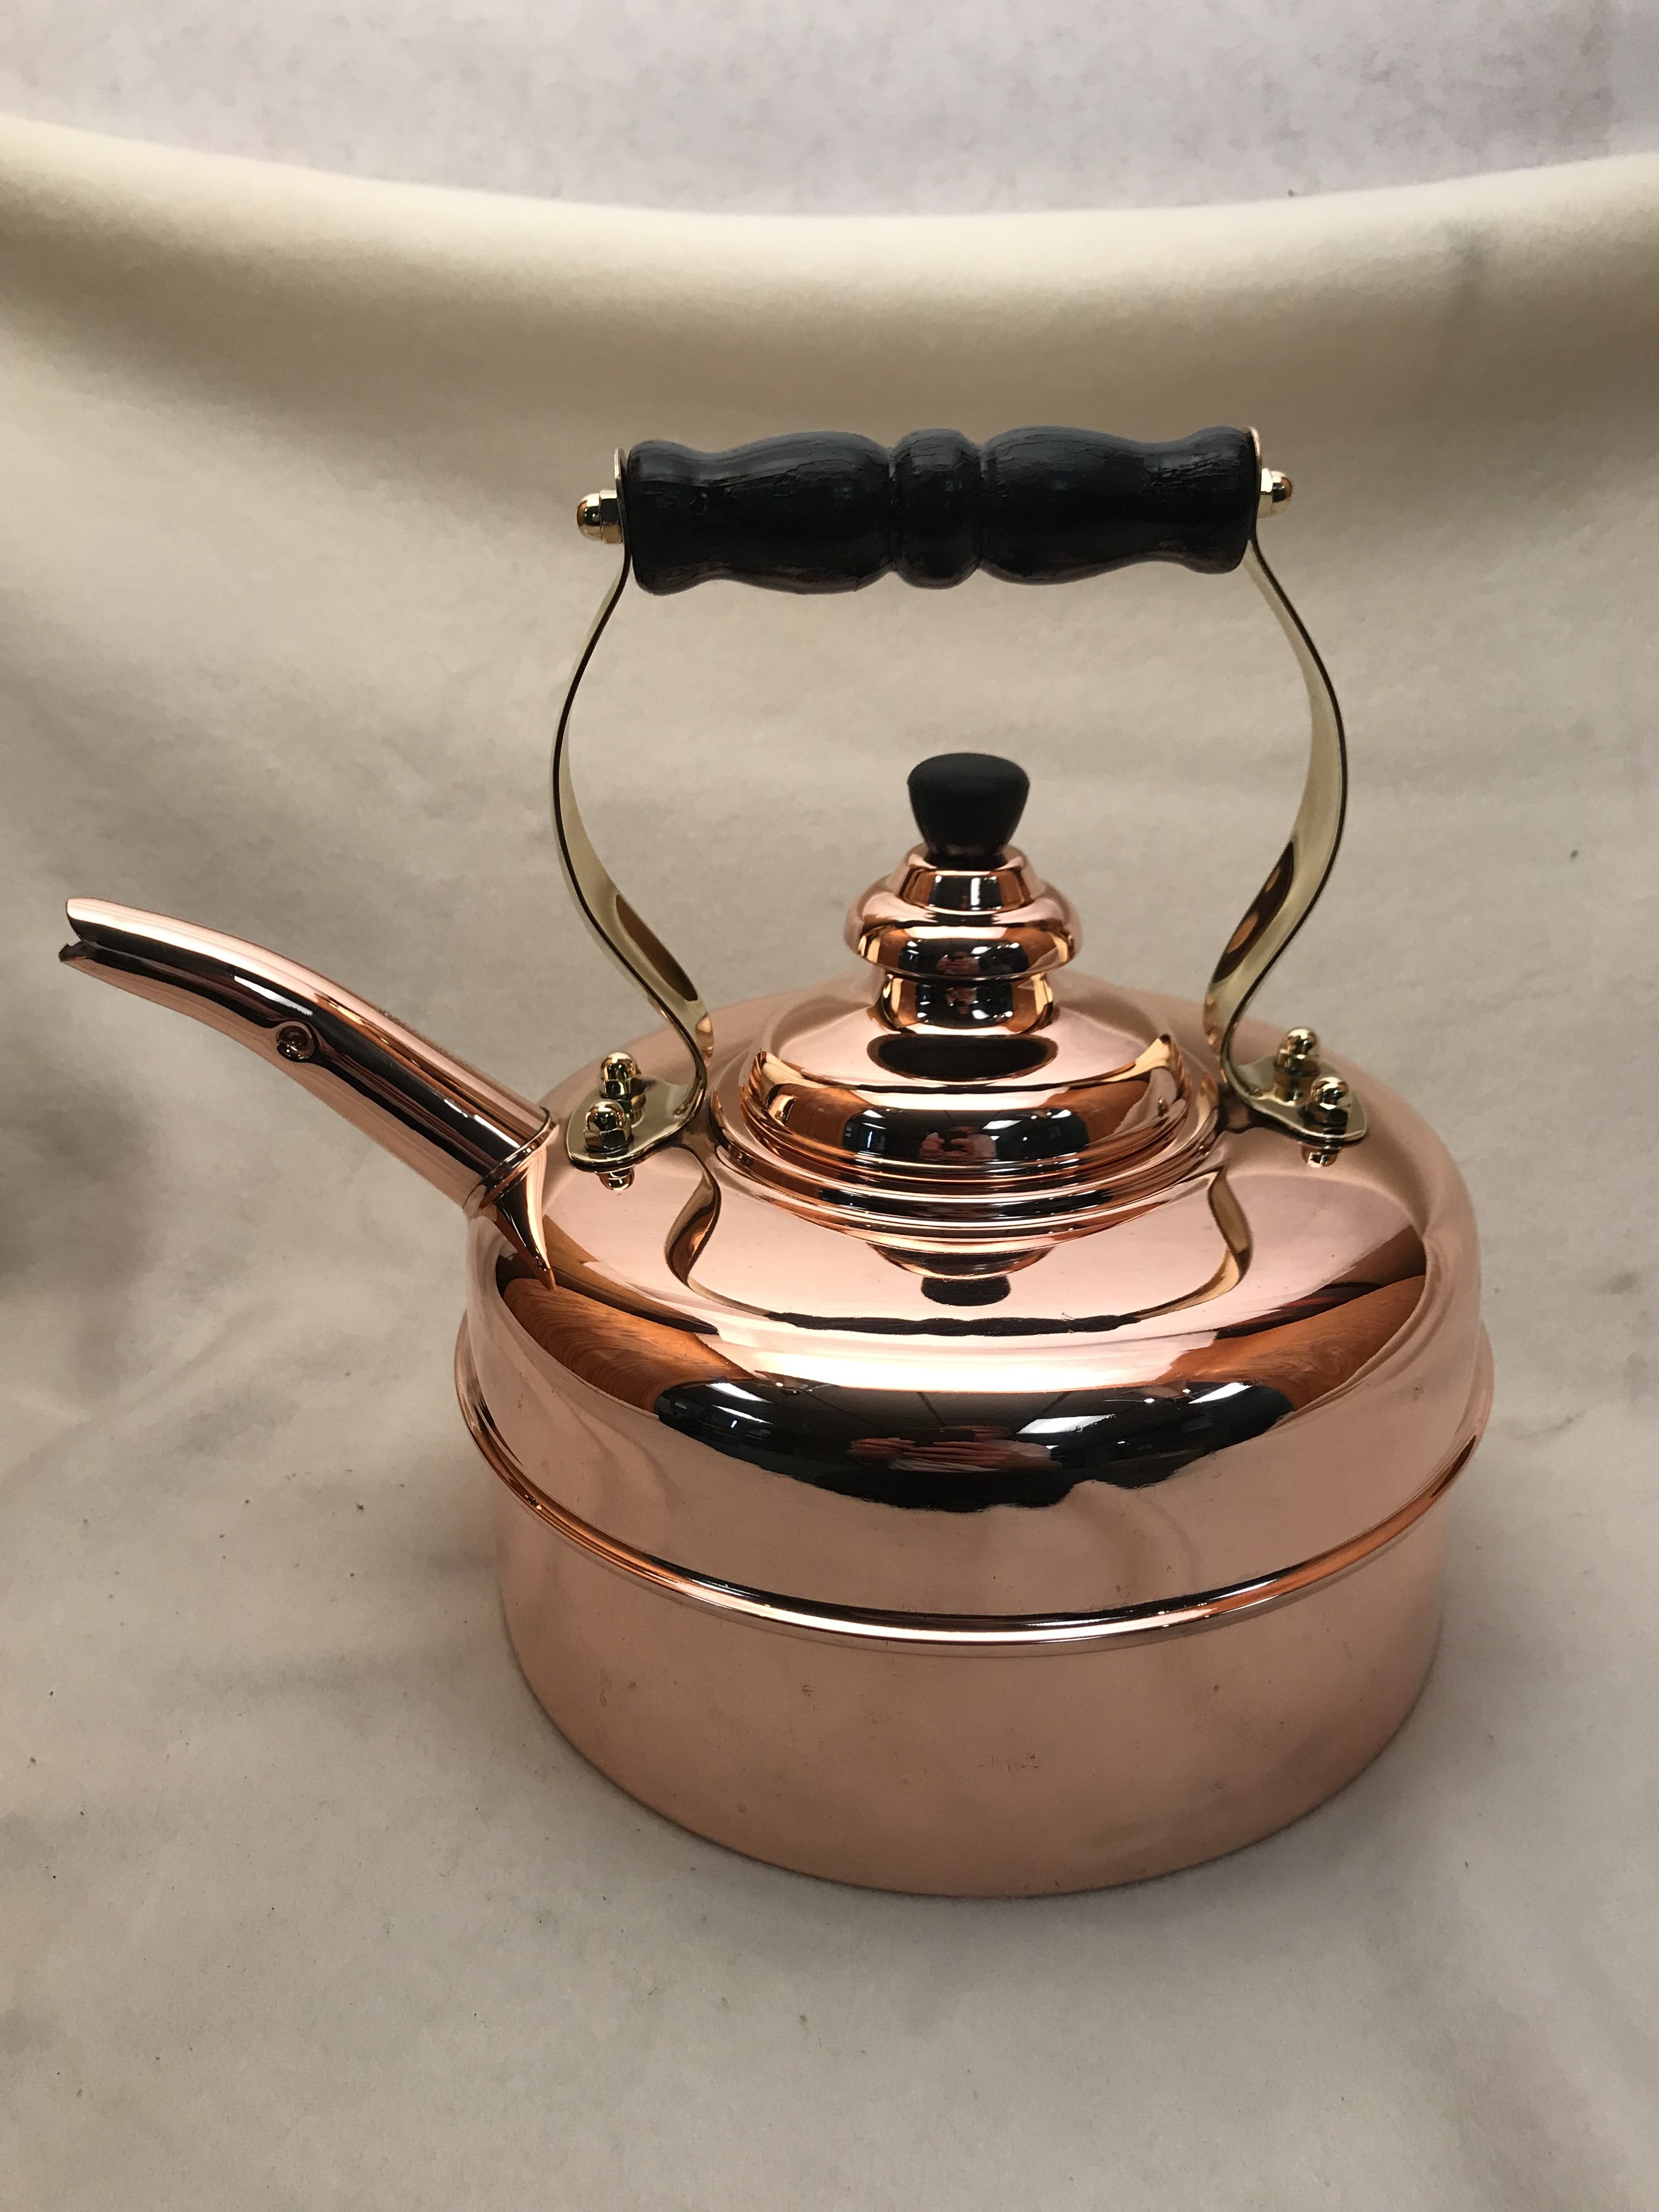 simplex tea kettle